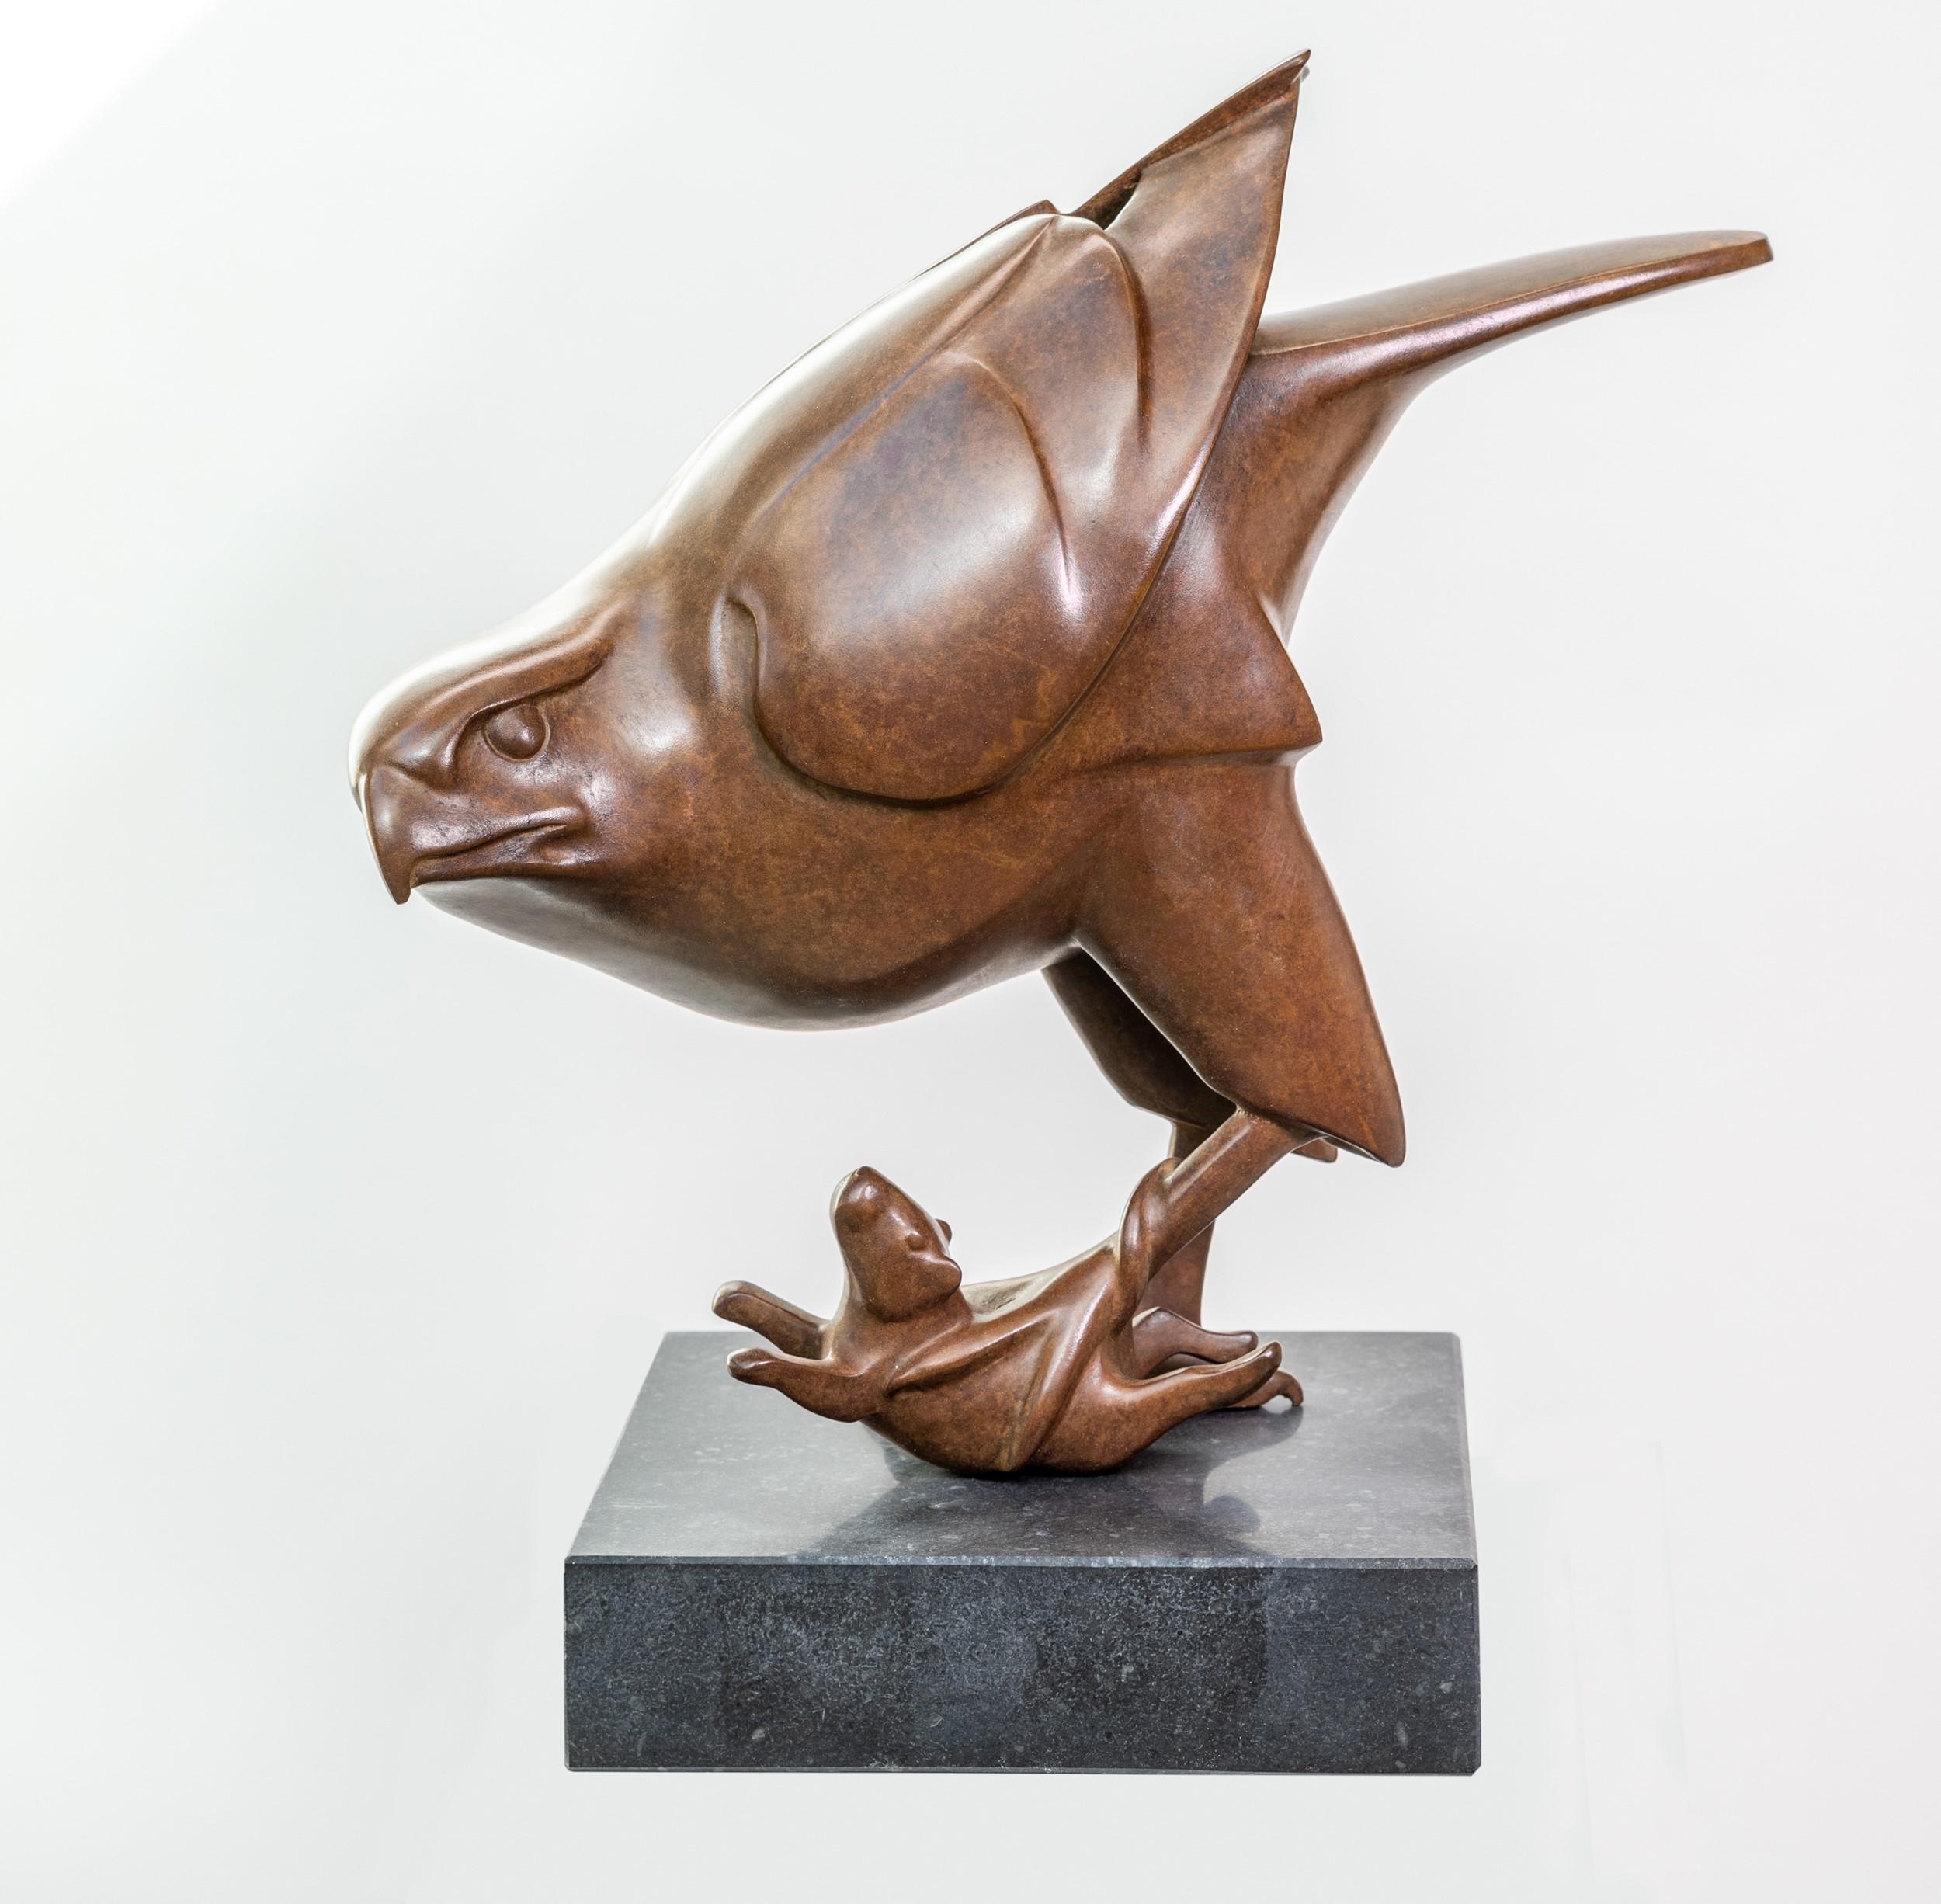 Evert den Hartog Figurative Sculpture - Roofvogel met Muis Prey Bird with Mouse Bronze Sculpture Ltd Edition In Stock